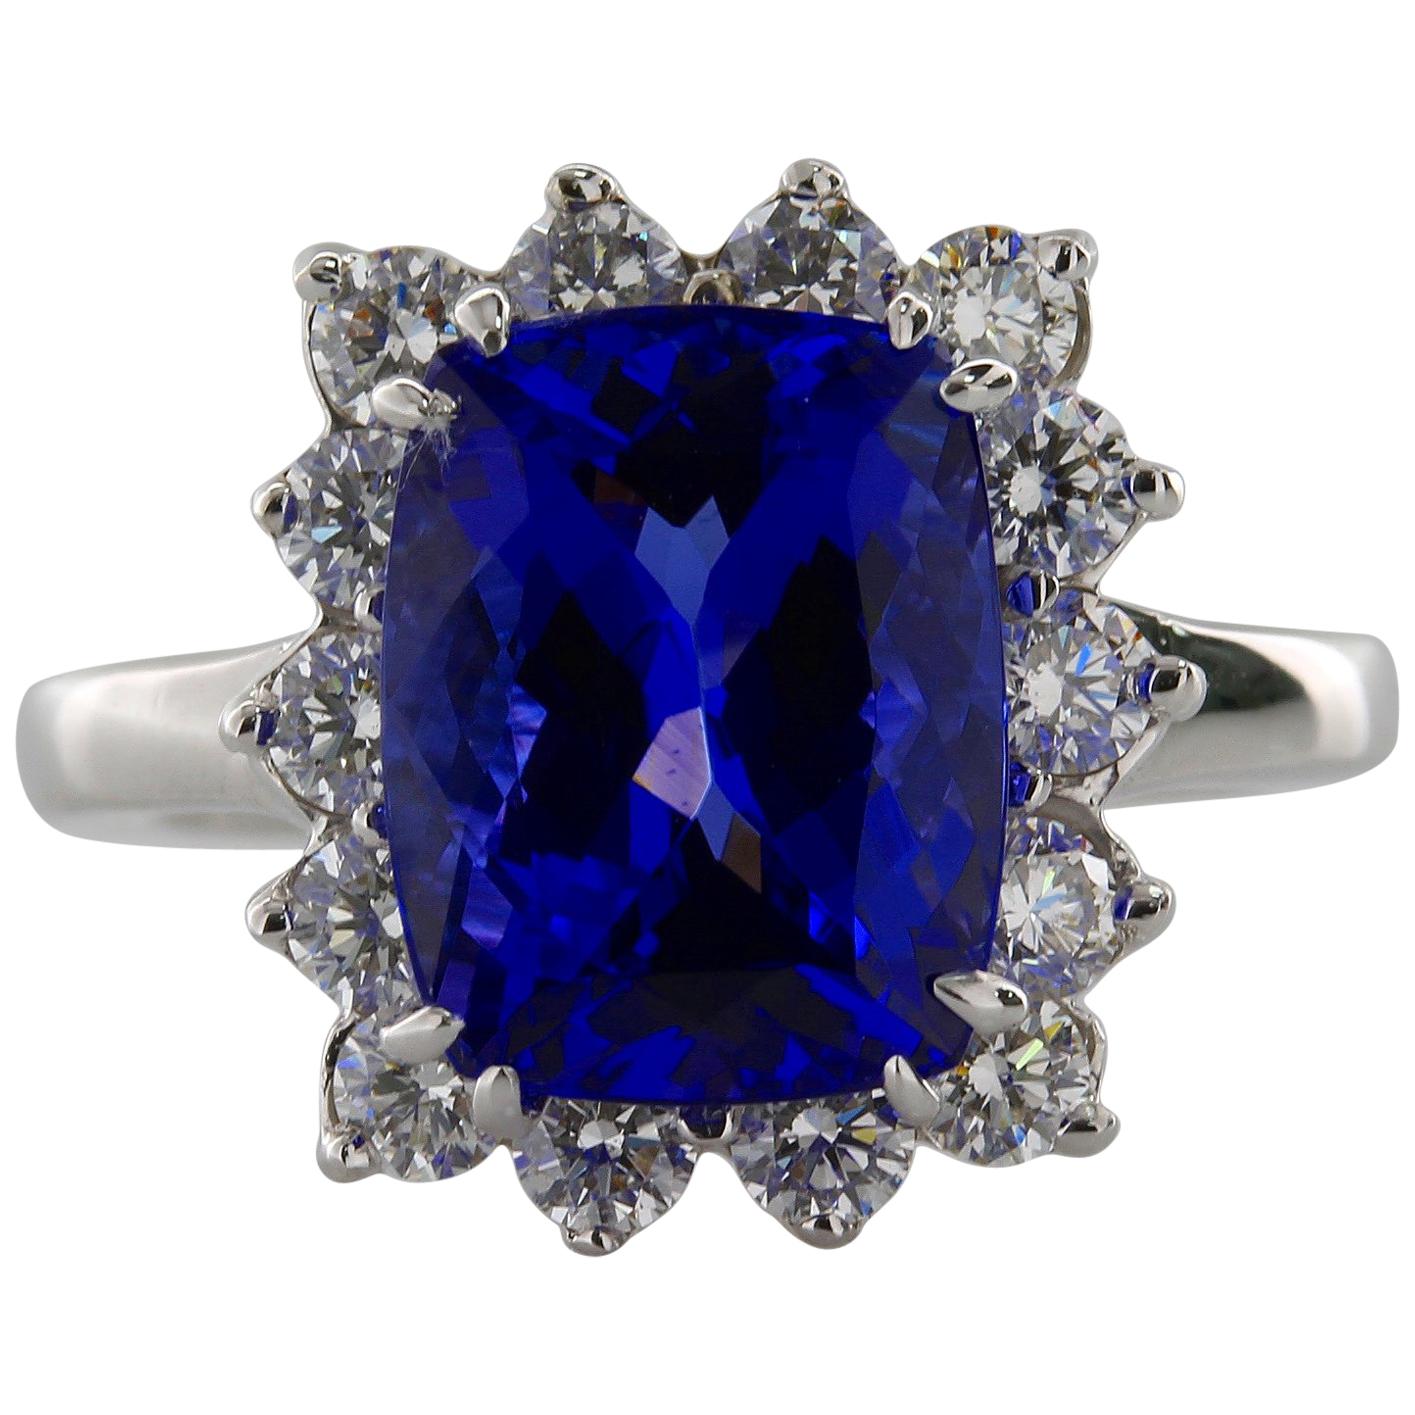 4.52 Carat Cushion Cut Violet Blue Tanzanite Gemstone 14 Karat White Gold Ring For Sale